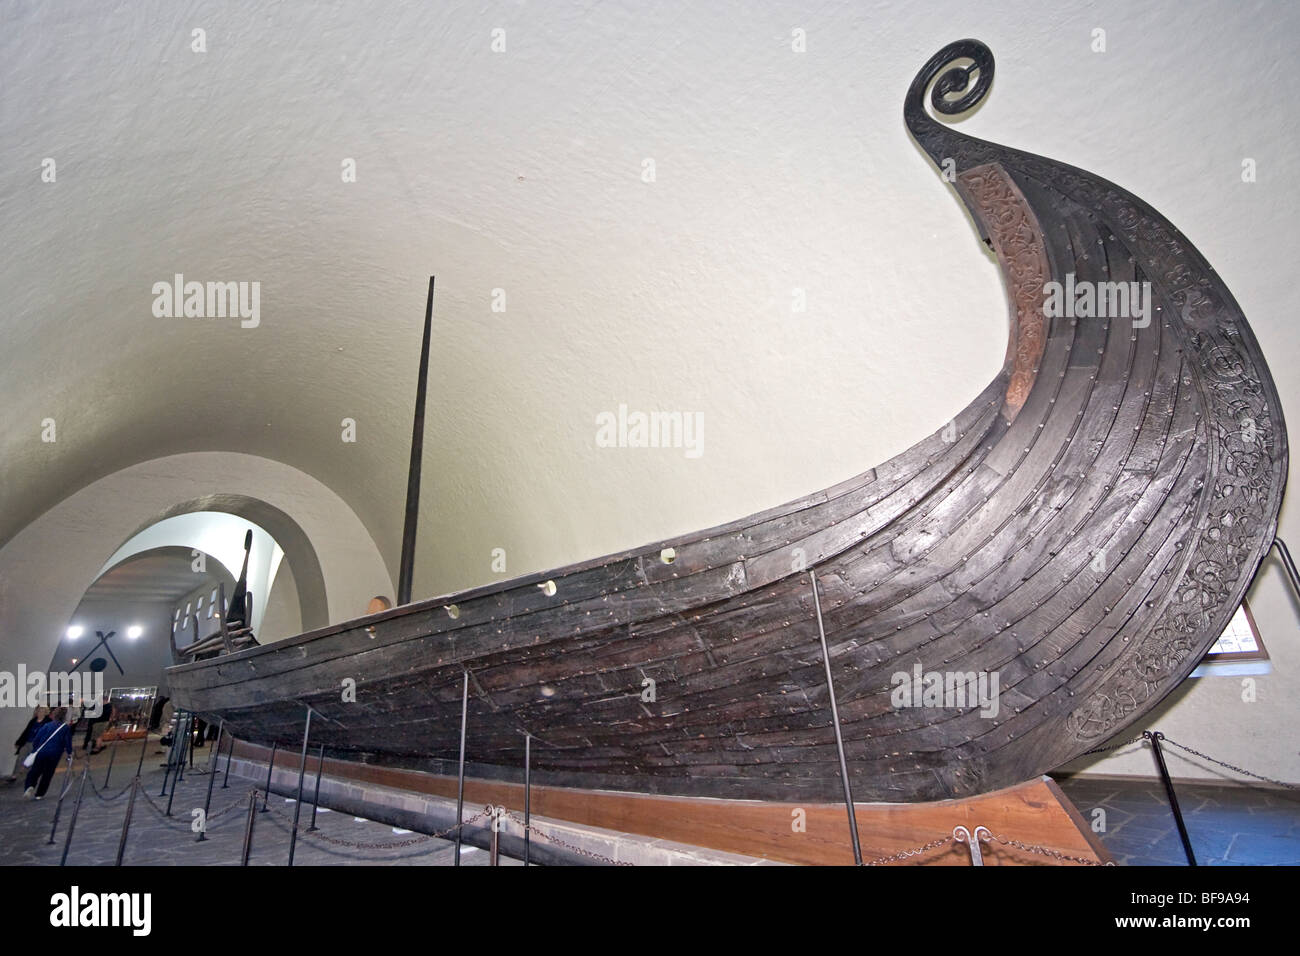 Oseburg-Wikinger-Schiff im Wikingerschiff-Museum in Oslo, Norwegen. Stockfoto